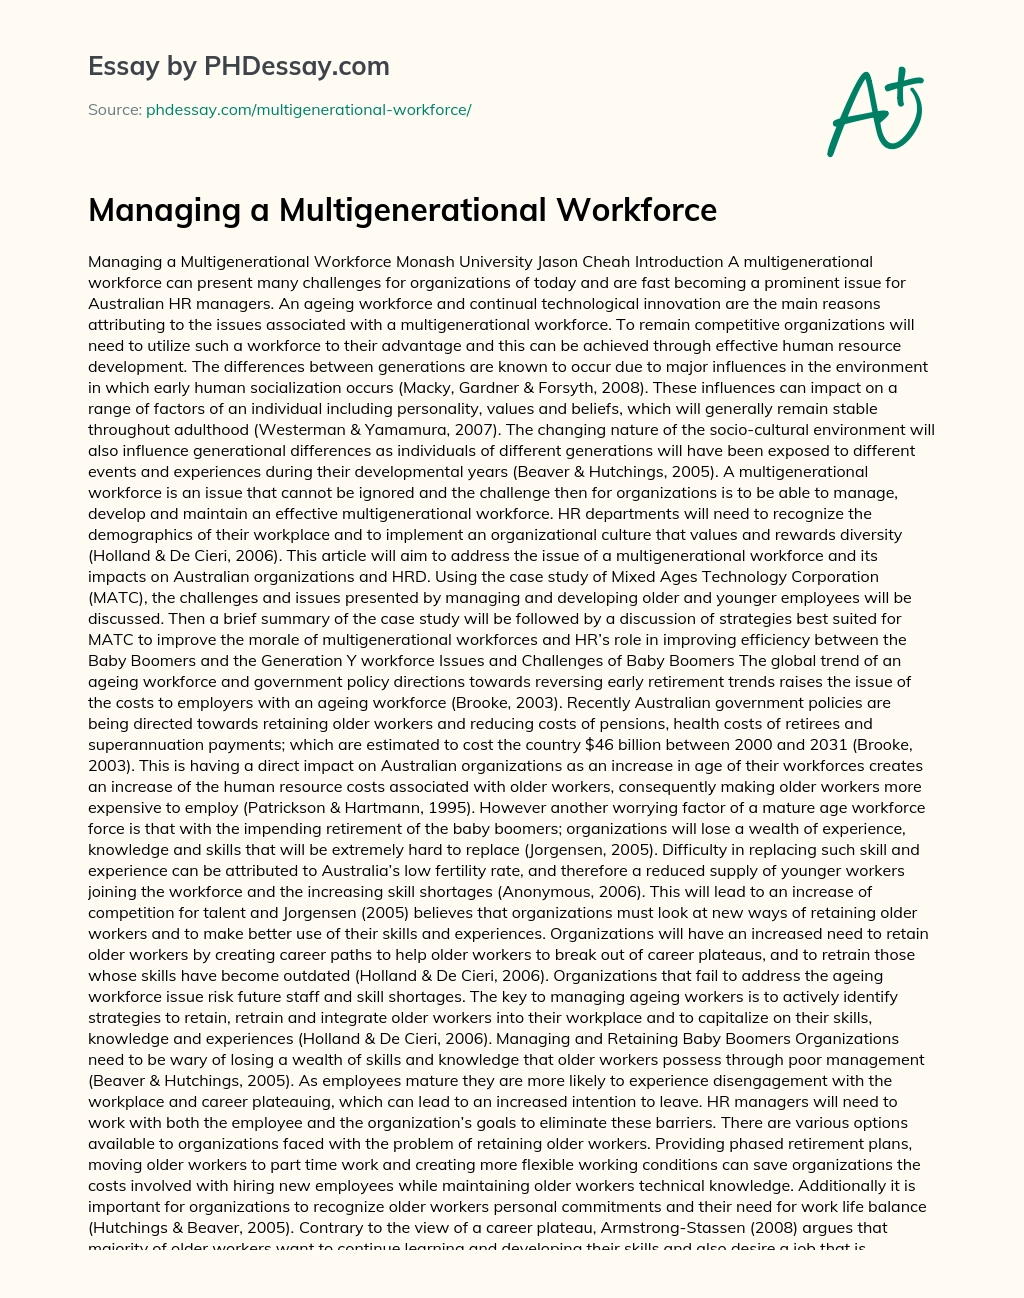 Managing a Multigenerational Workforce essay